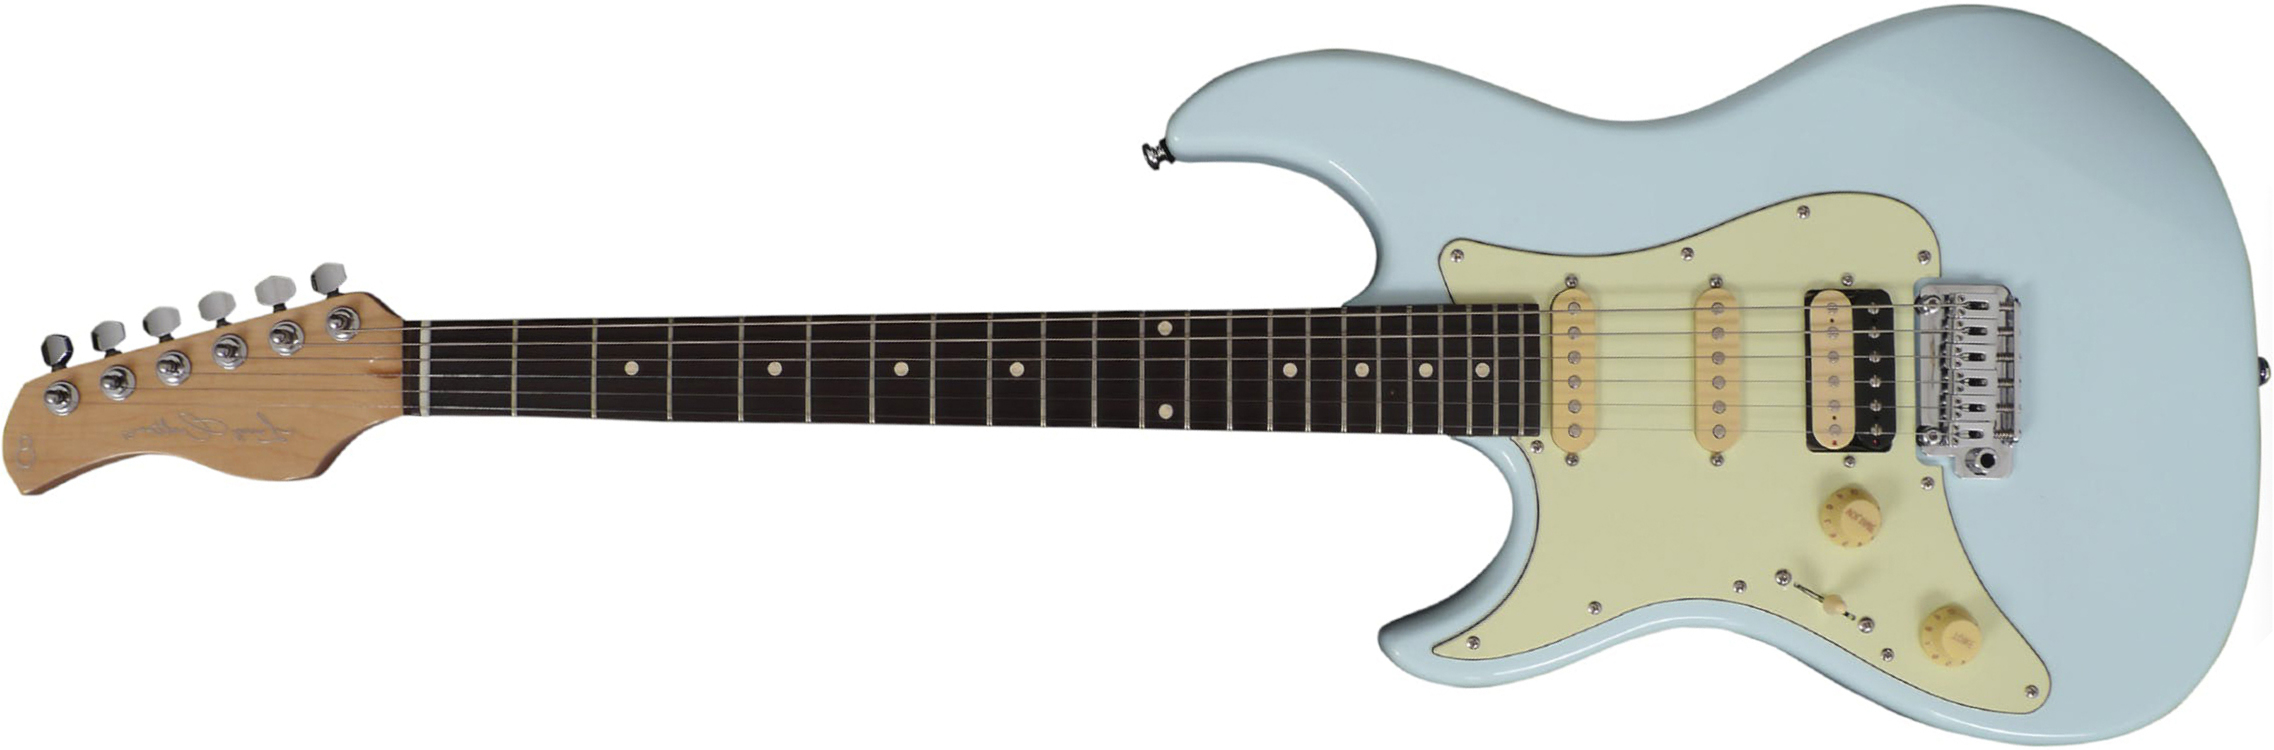 Sire Larry Carlton S3 Lh Signature Gaucher Hss Trem Rw - Sonic Blue - Linkshandige elektrische gitaar - Main picture